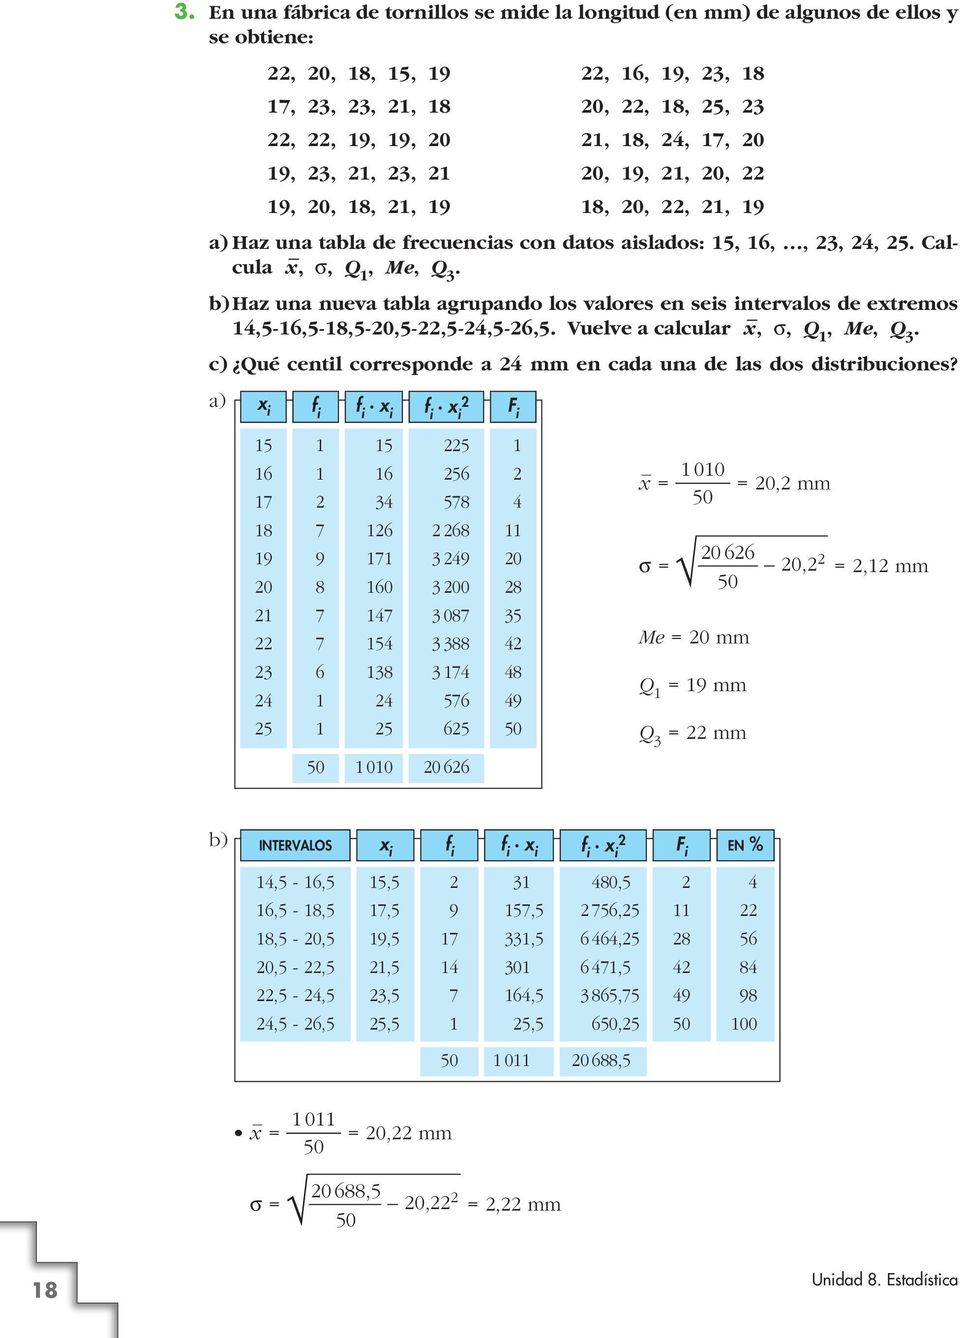 Vuelve a calcular x, q, Q, Me, Q. c) Qué centil corresponde a mm en cada una de las dos distribuciones?